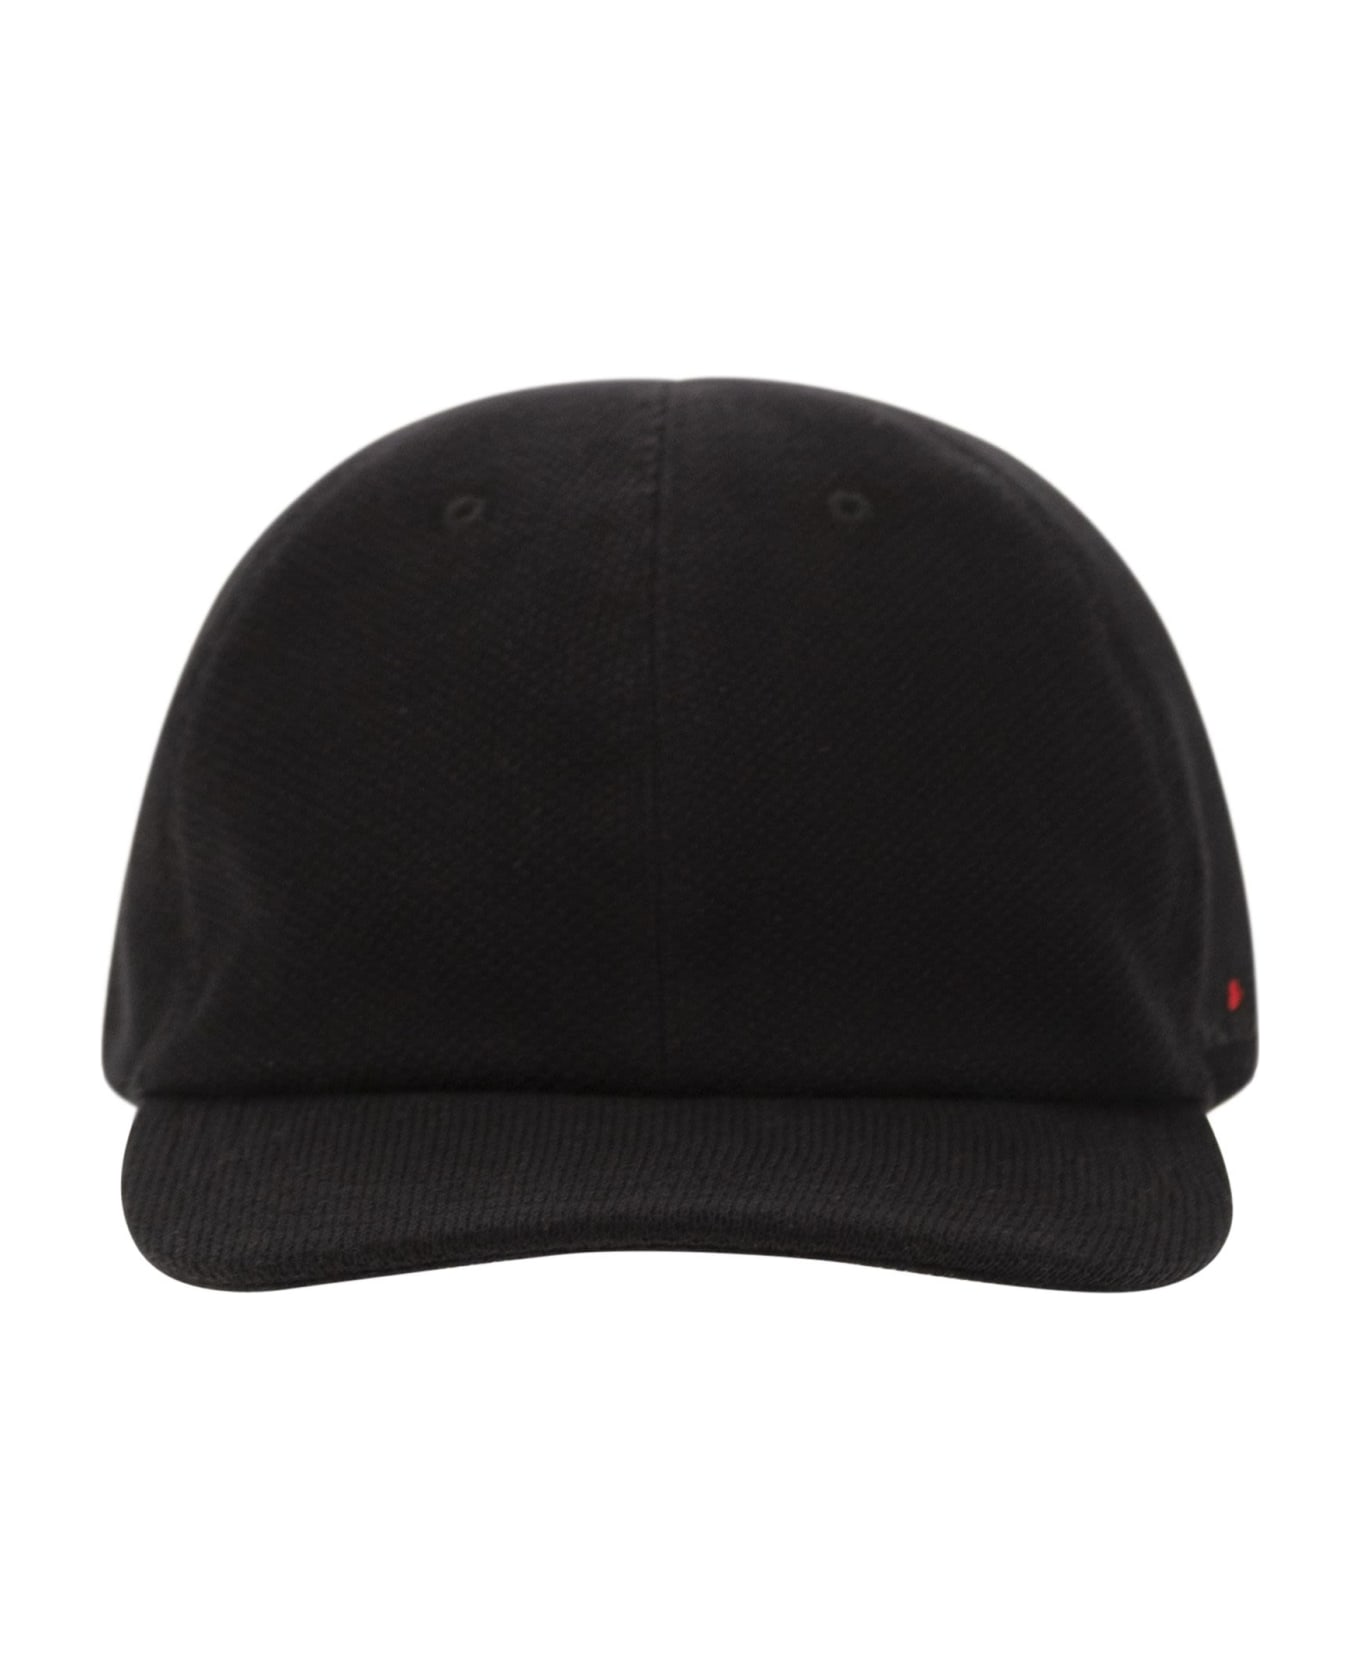 Kiton Cotton Baseball Cap - Black